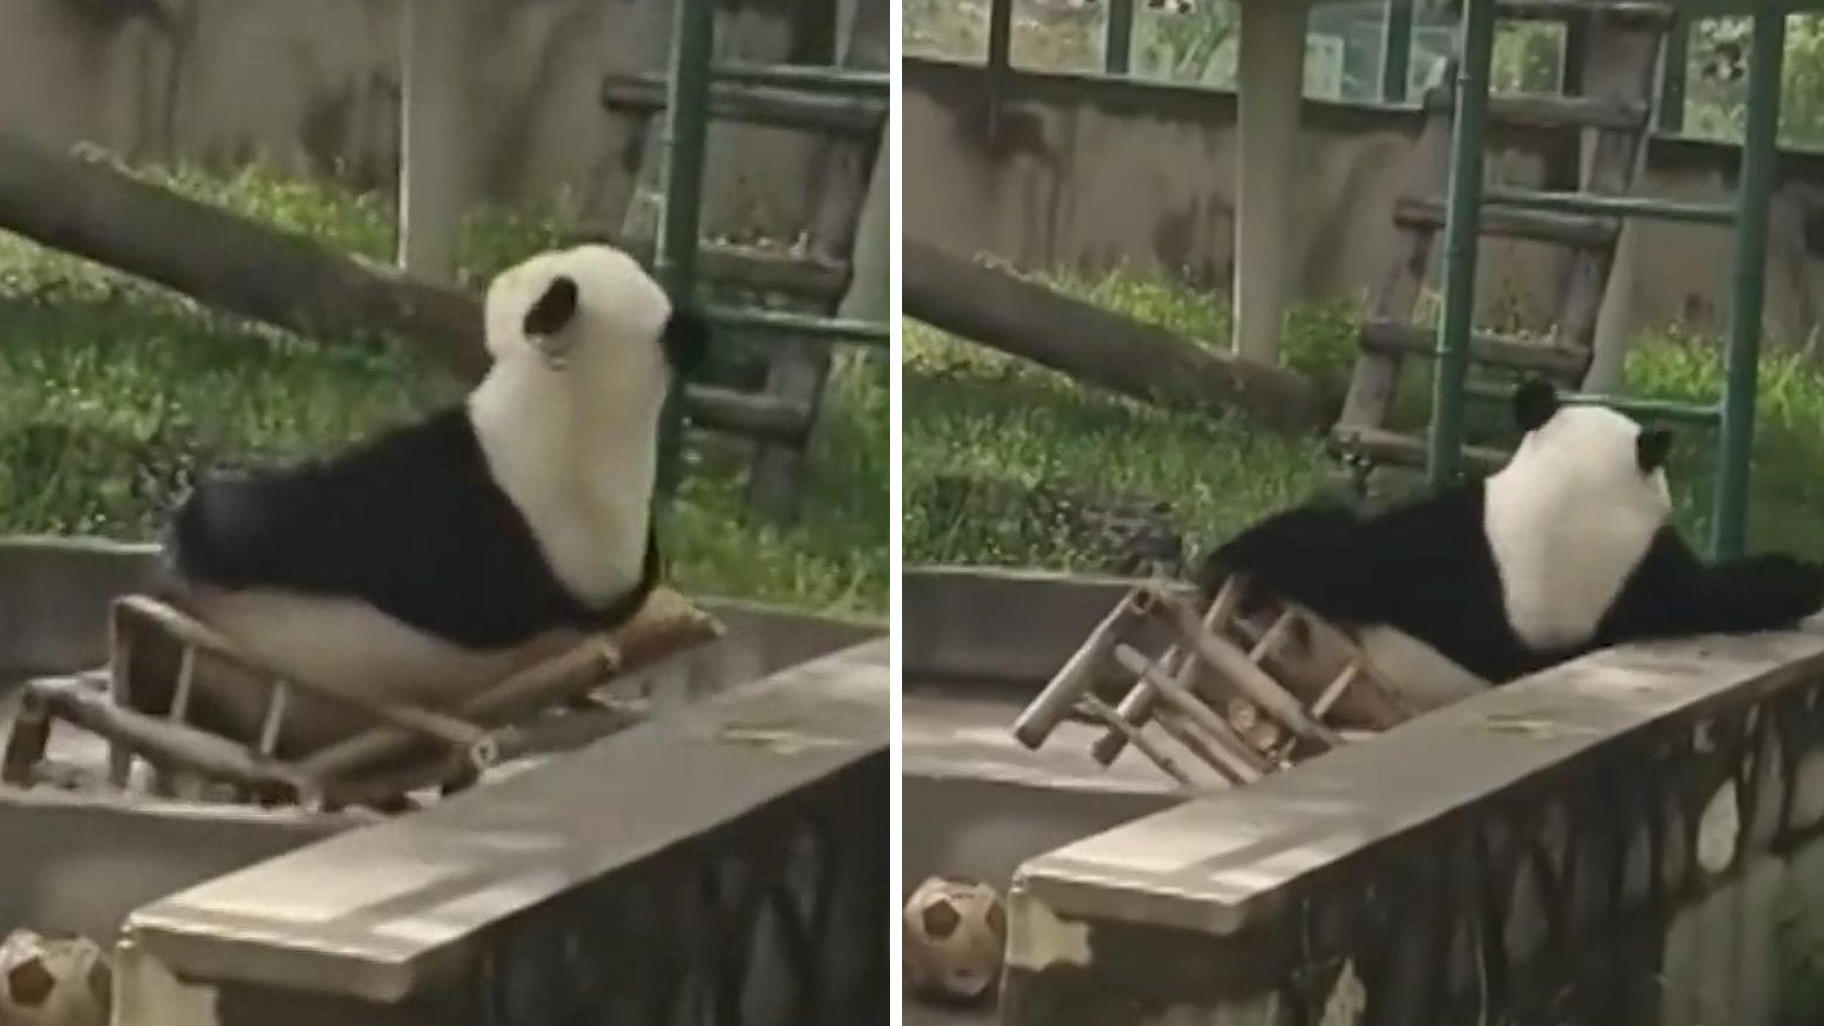 Ups! Ungeschickter Panda macht sich zum Gespött Zoo-Besucher kommen aus dem Lachen nicht mehr raus